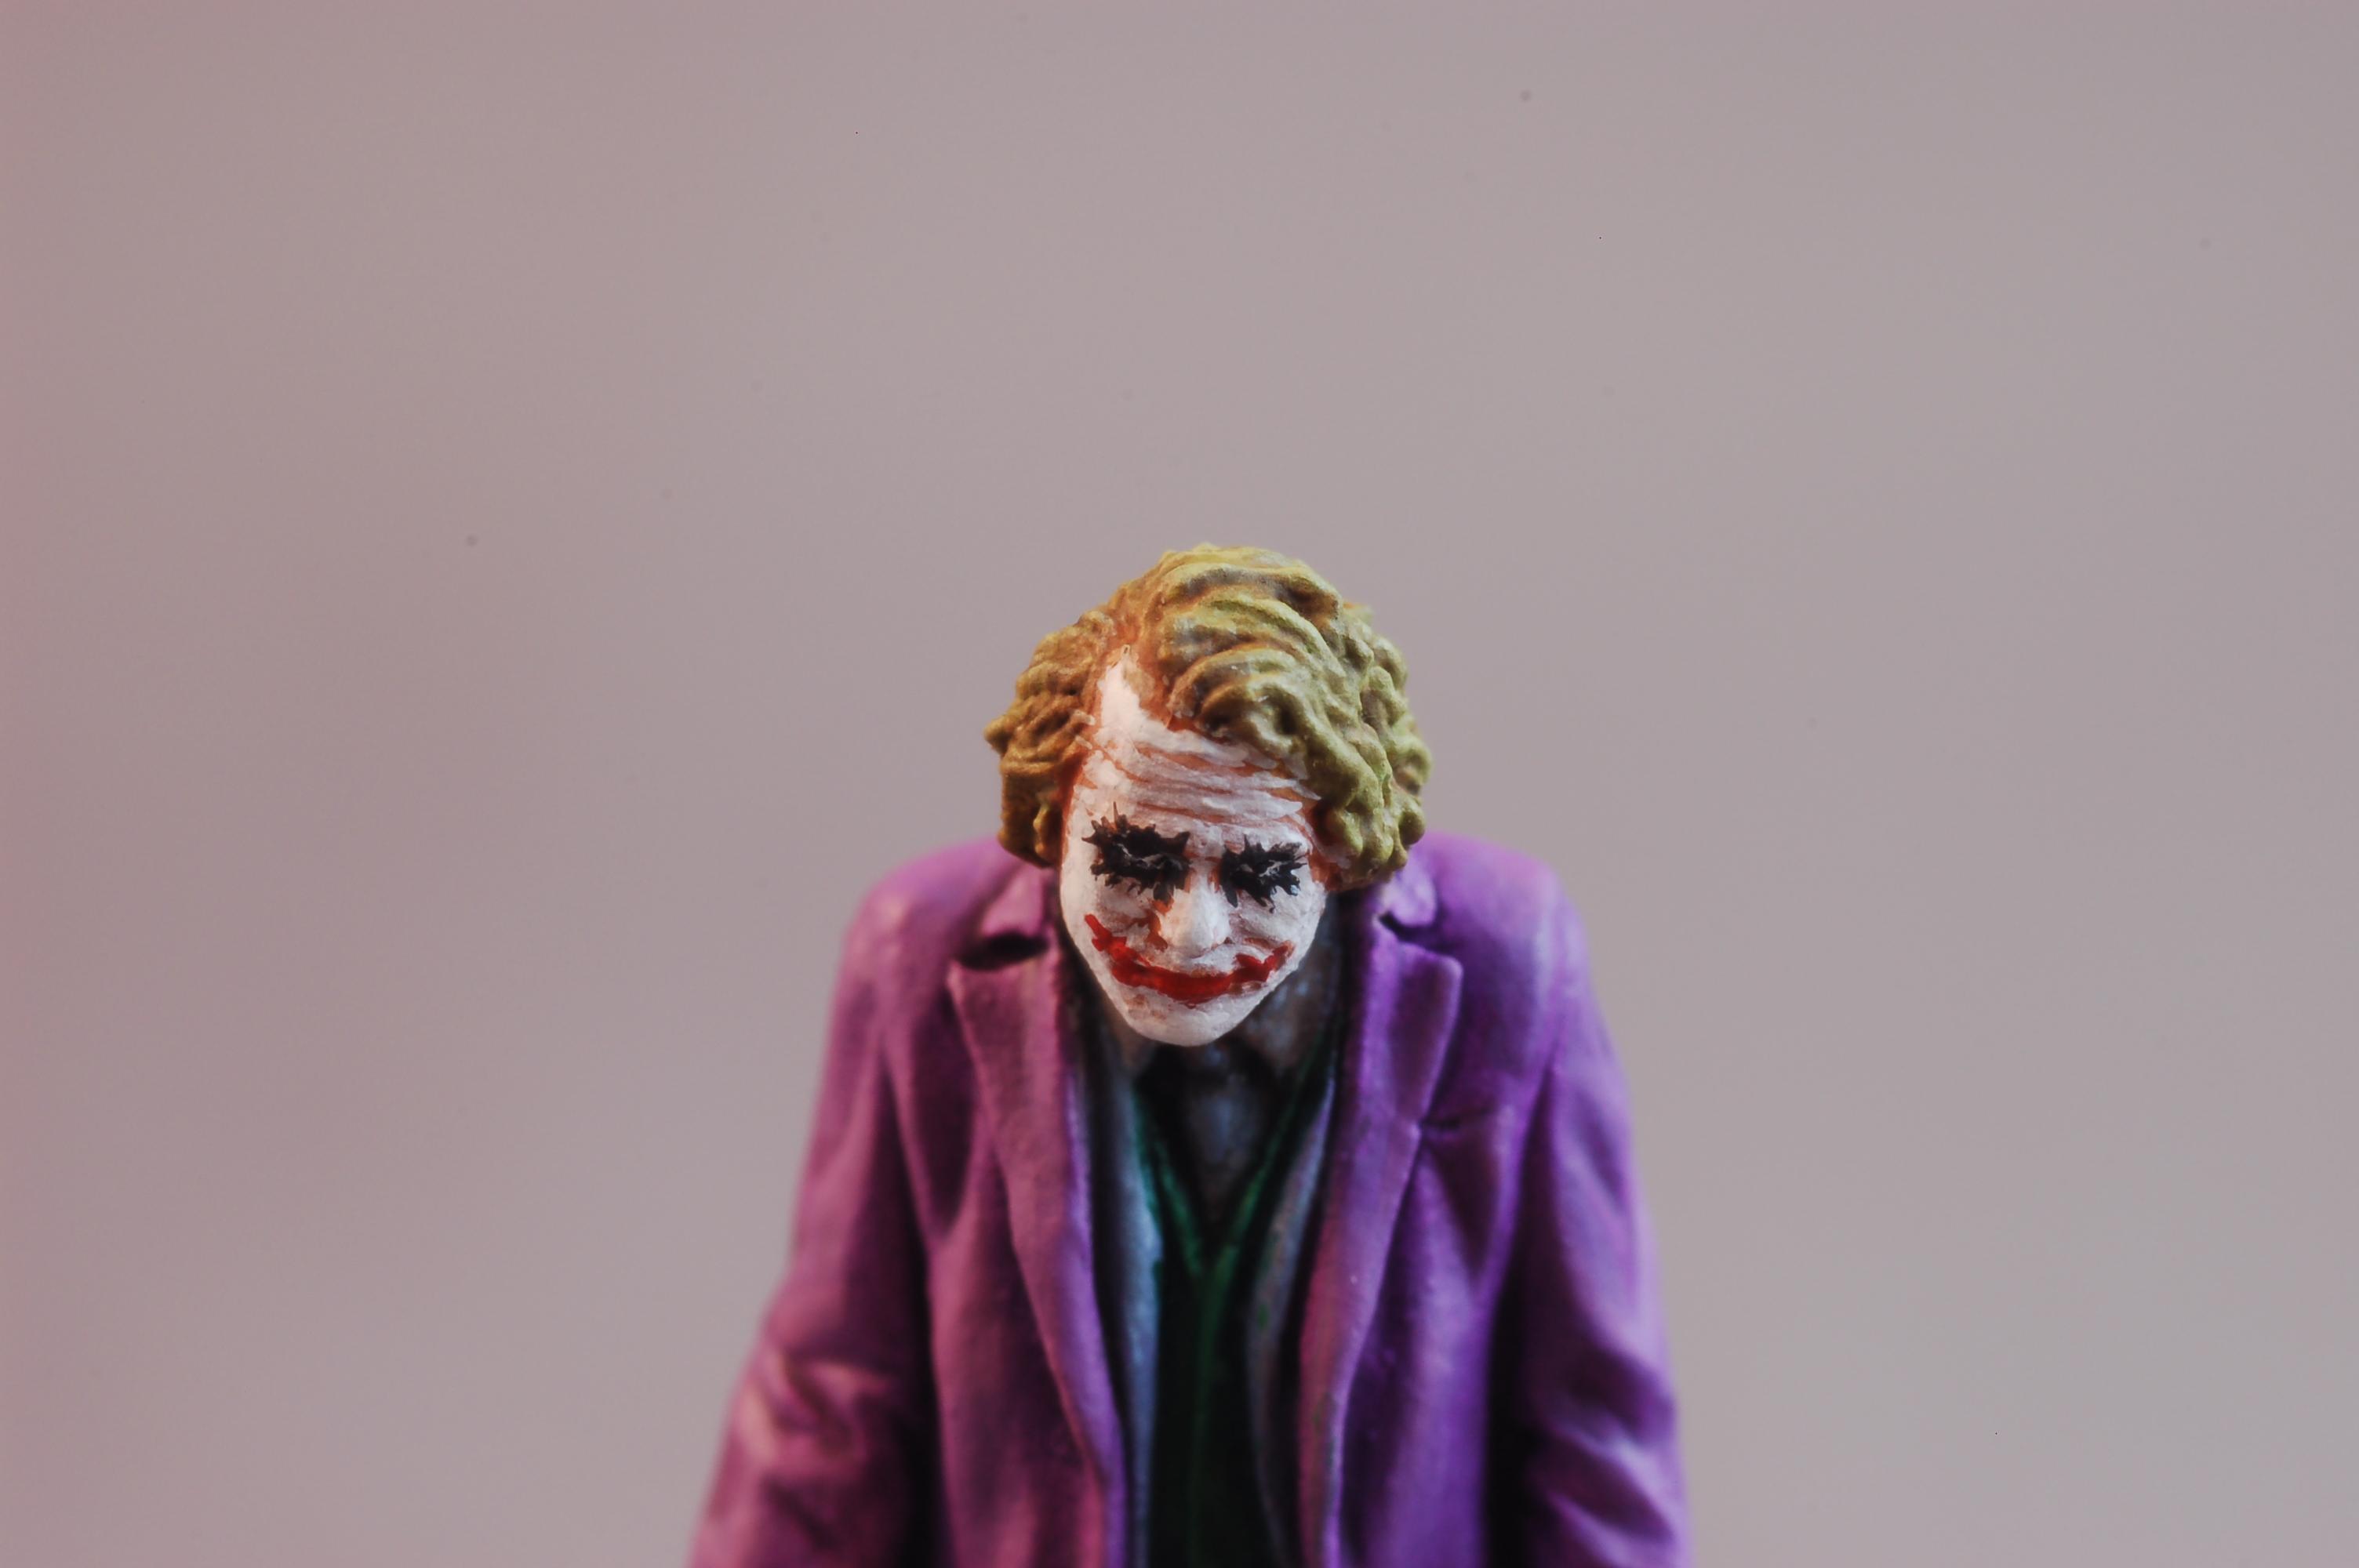 Joker, Heath Ledger's Joker